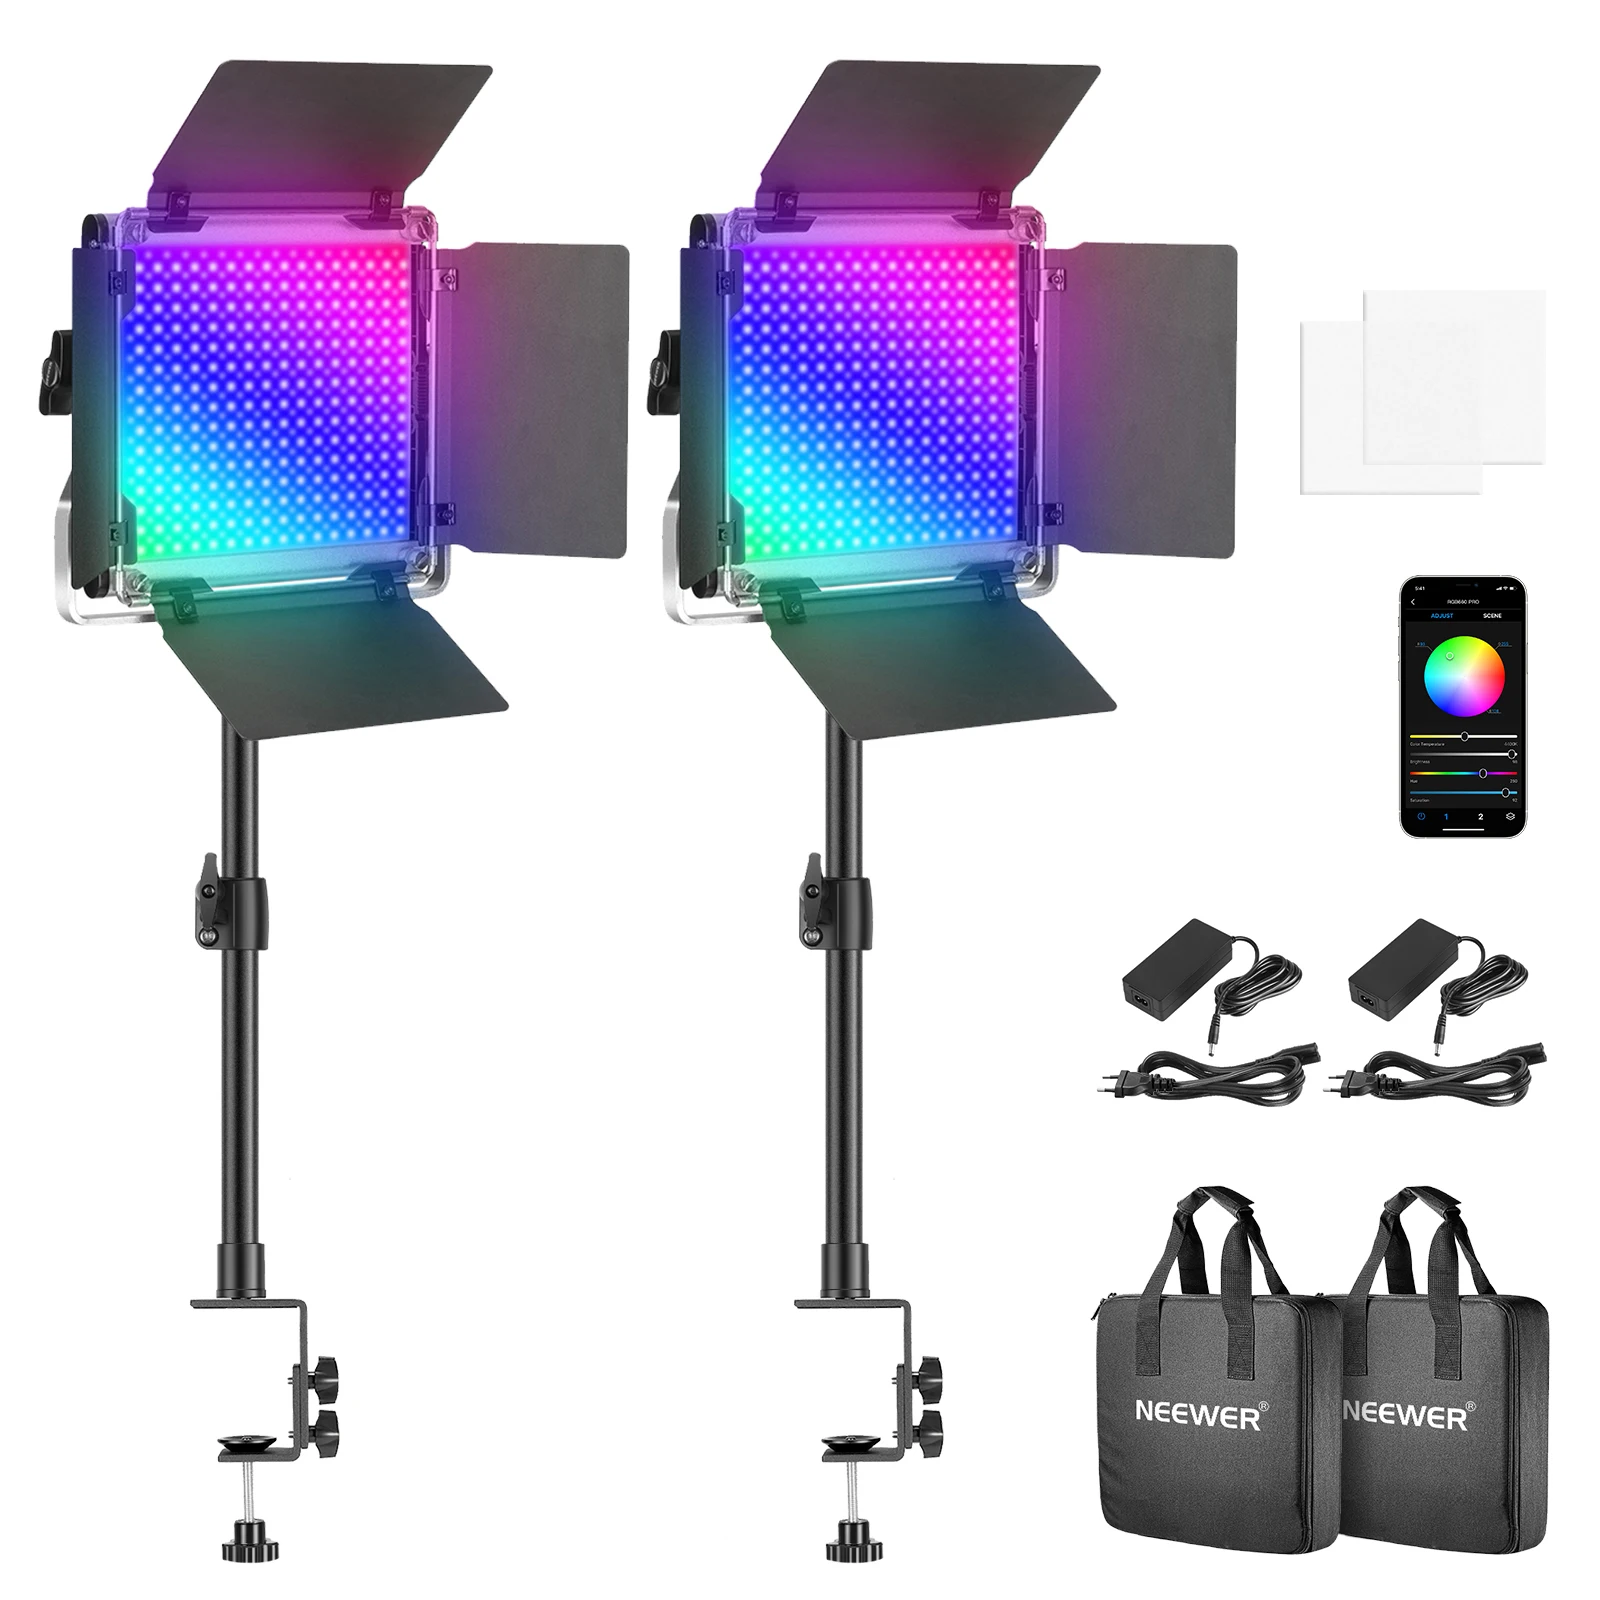 

Neewer 2-Pack 660PRO RGB Светодиодная лампа для видео с управлением через приложение светильник освещения для видео, CRI 97 + для потоковой передачи, свет...